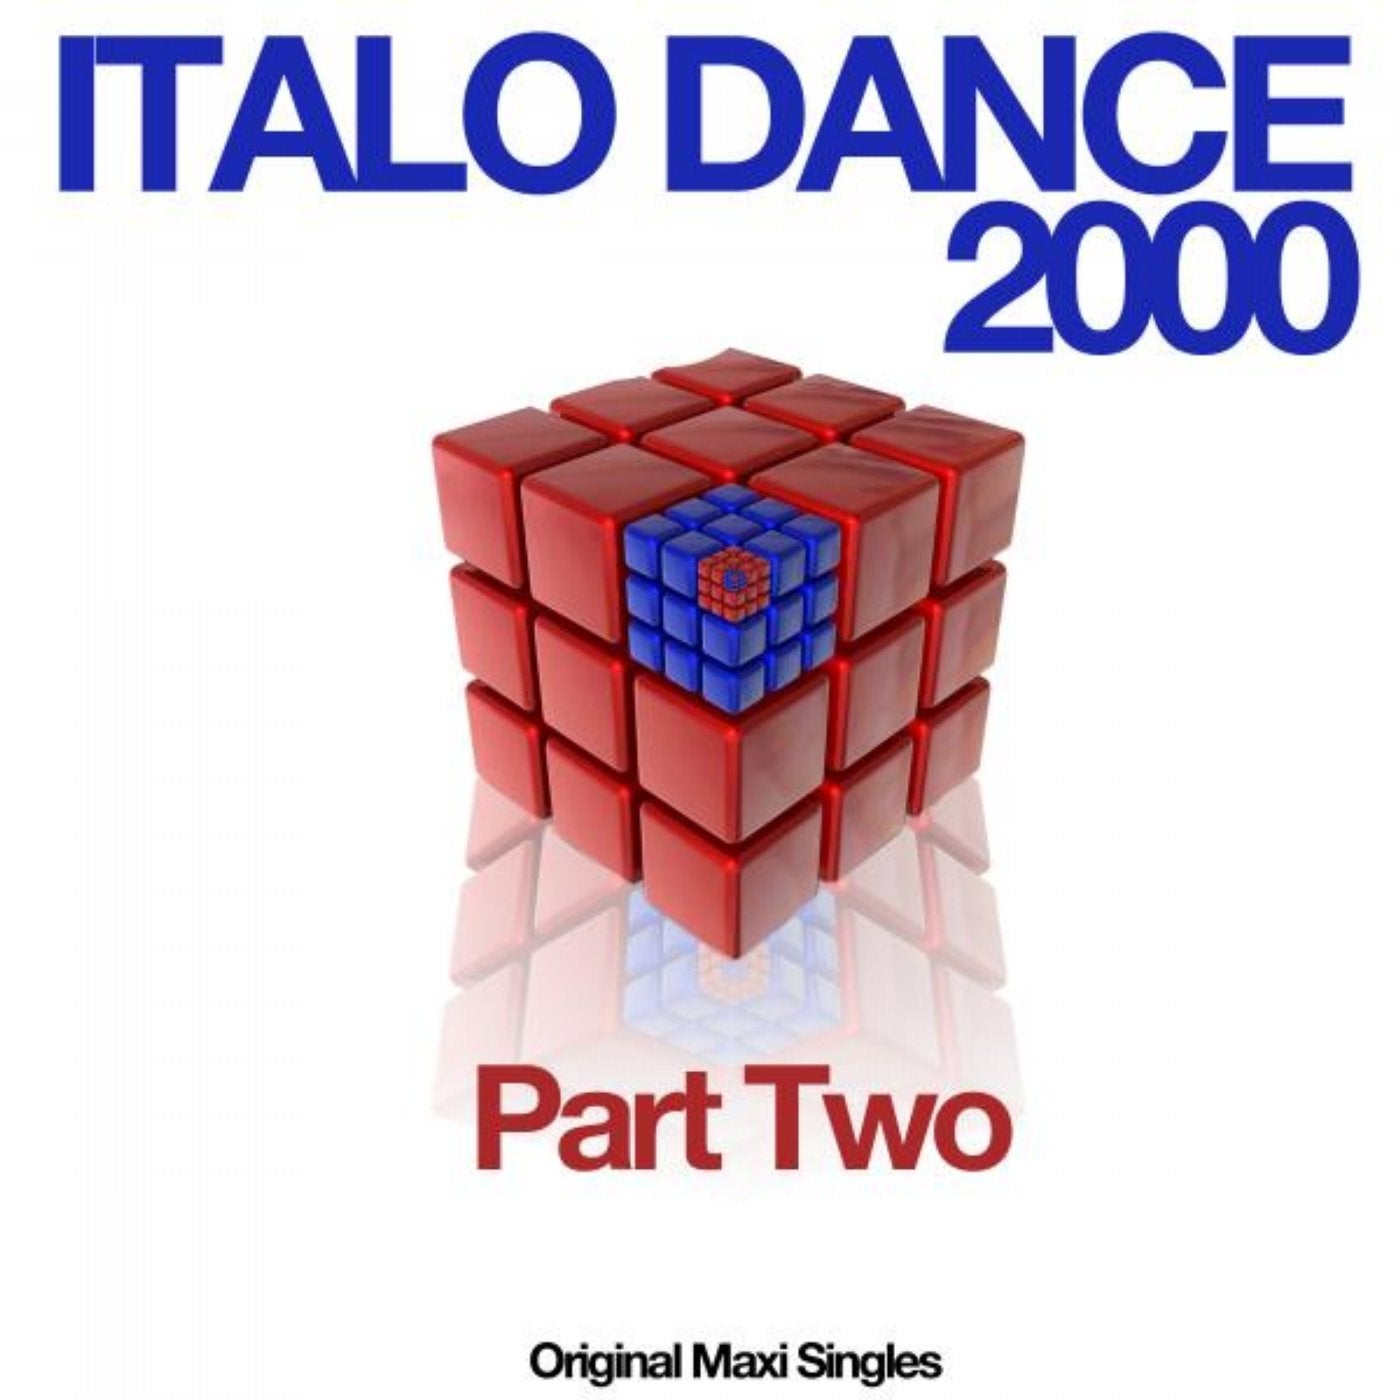 Italo Dance 2000 Part Two (Original Maxi Singles)